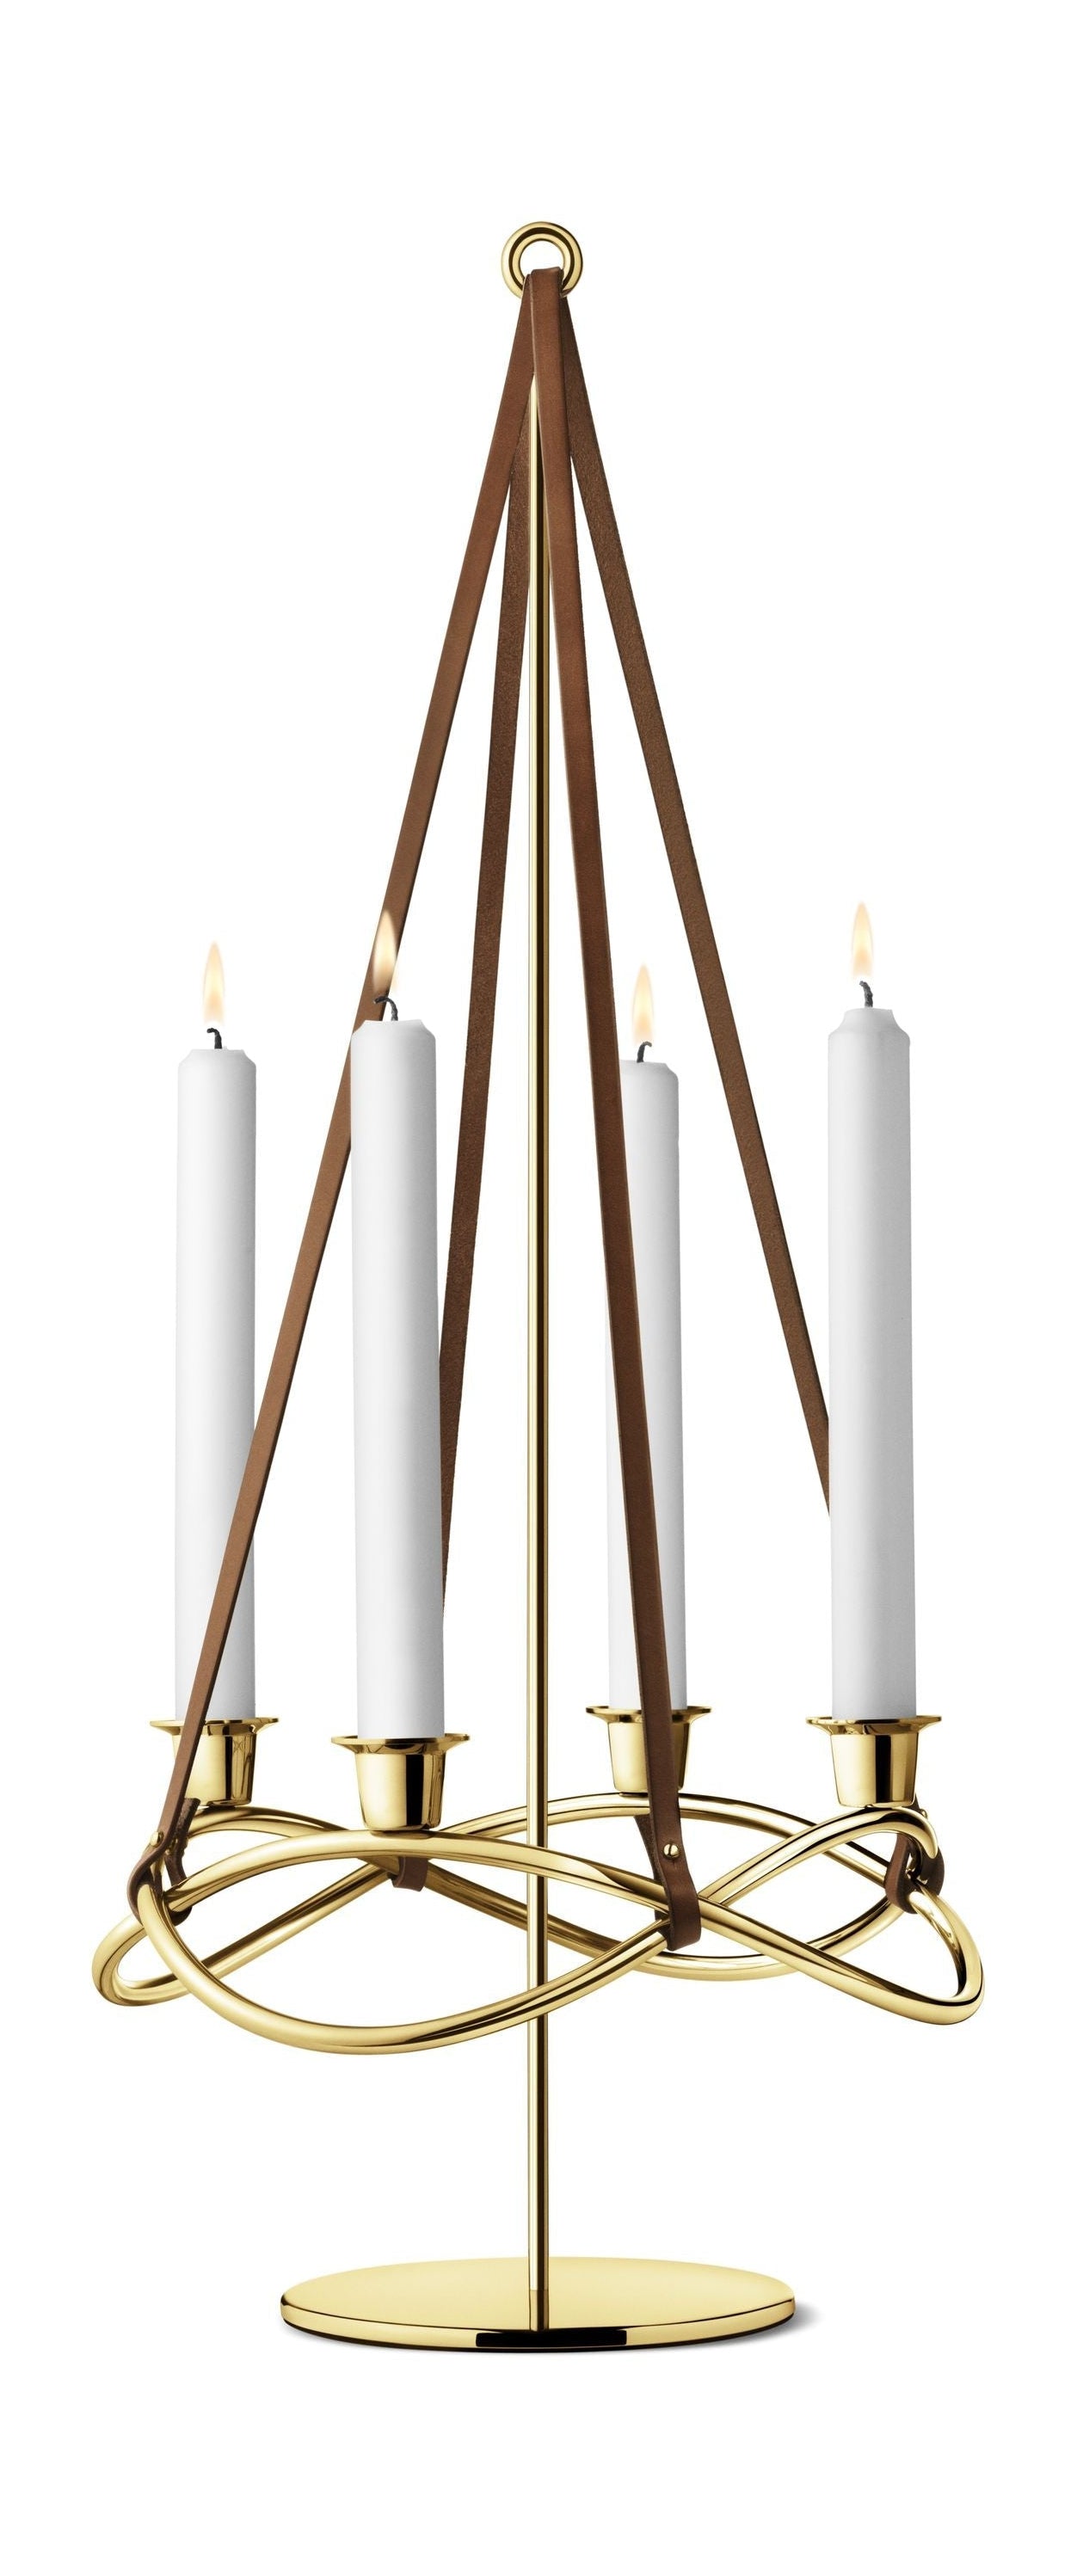 Georg Jensen Saisonaufsatz für Kerzenständer, Vergoldung